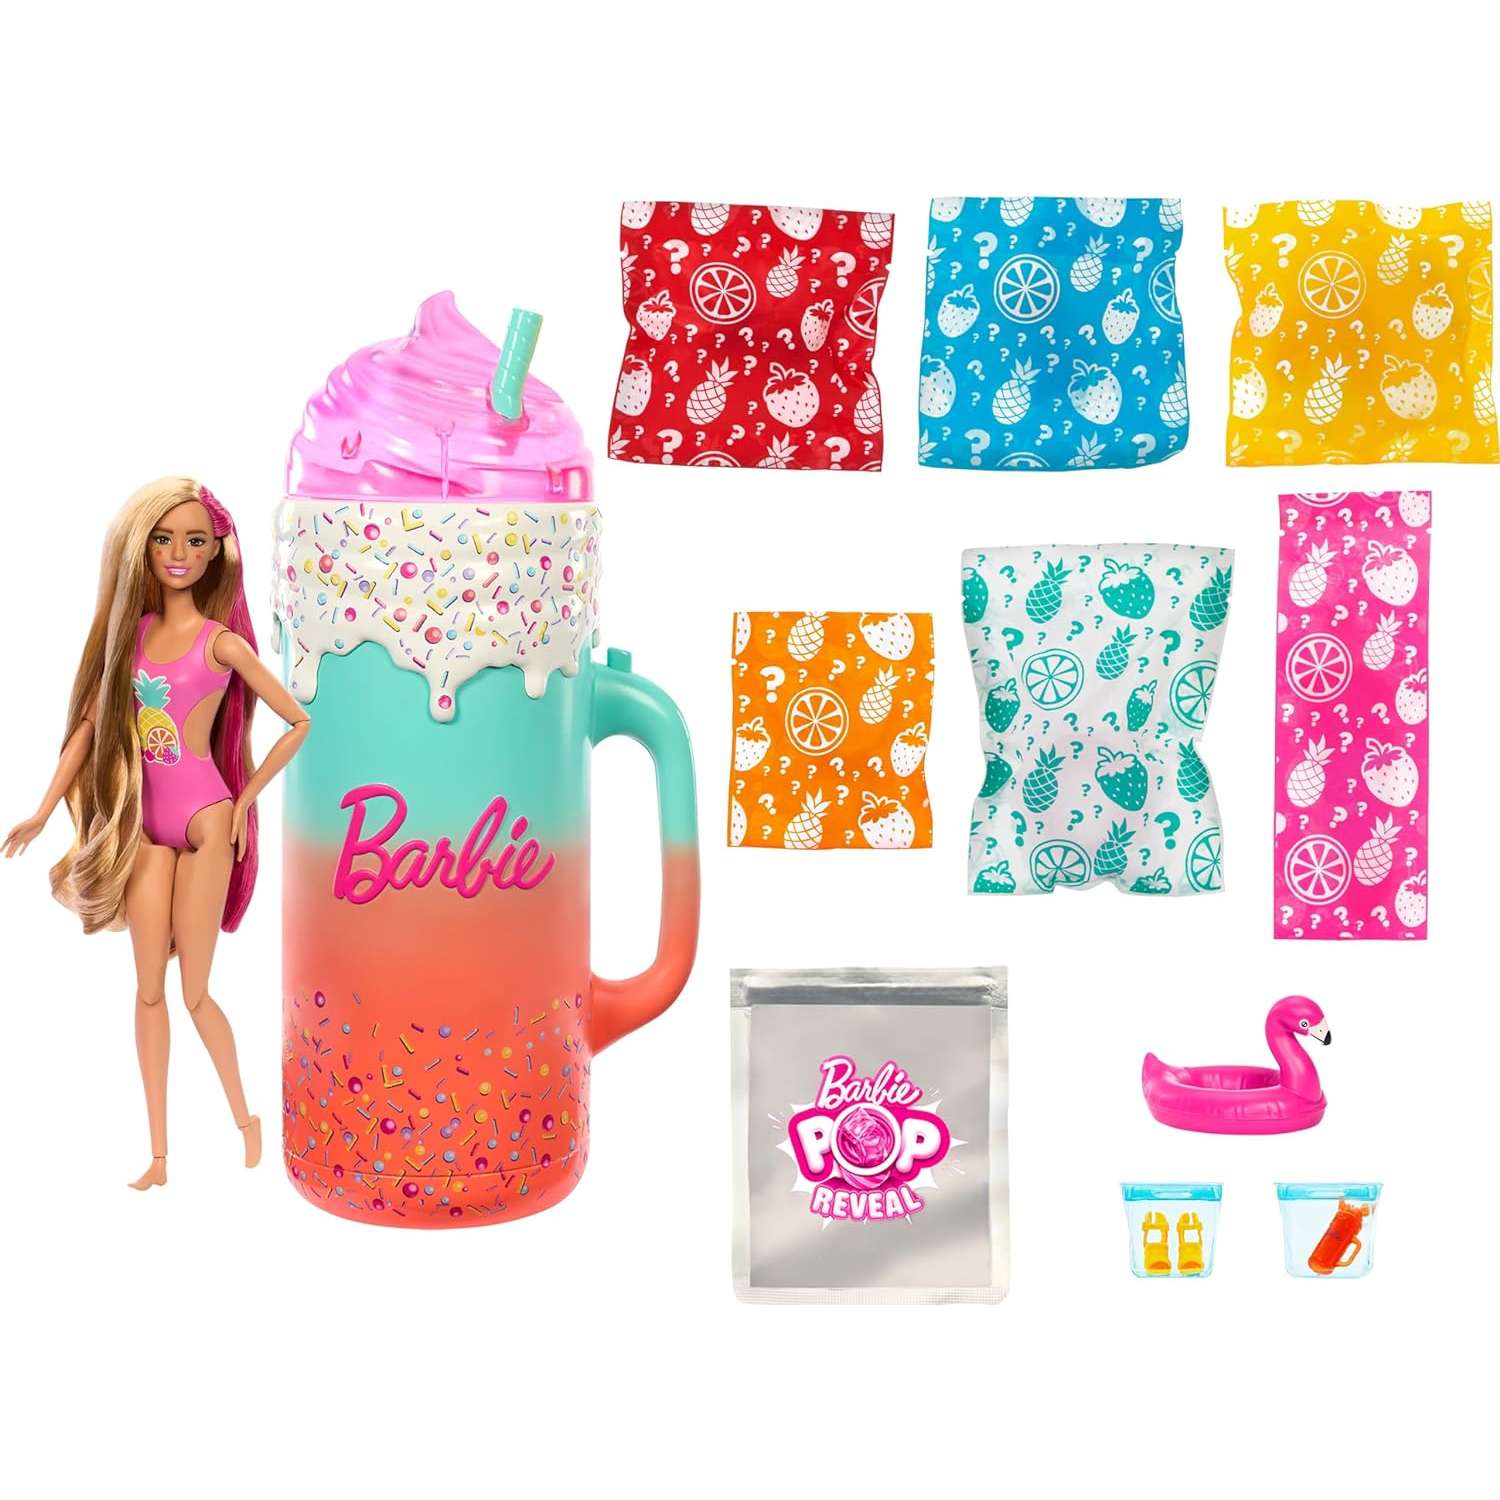 Кукла Barbie PopReveal подарочный набор HRK57 HRK57 - фото 4